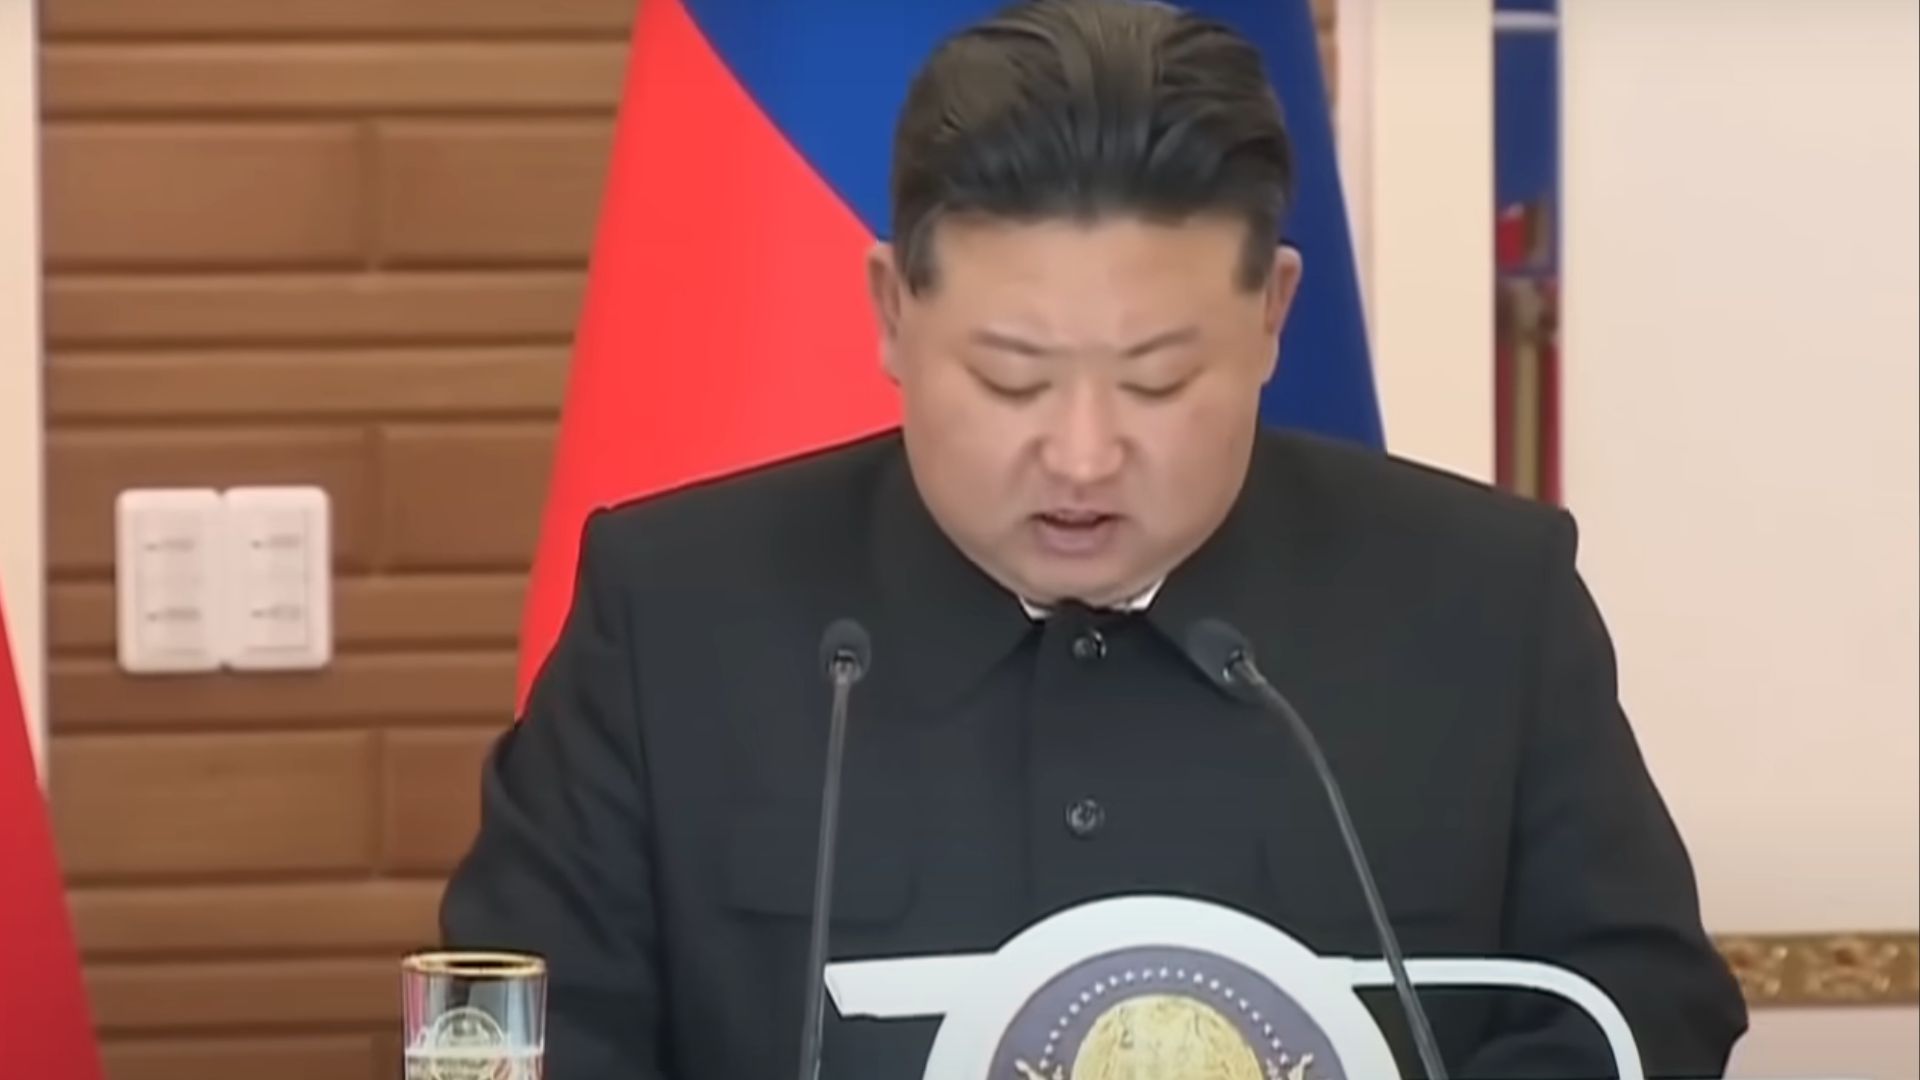 Kim Jong Un Coreia do Norte executou homem por ouvir e divulgar K-pop, afirma relatório sul-coreano